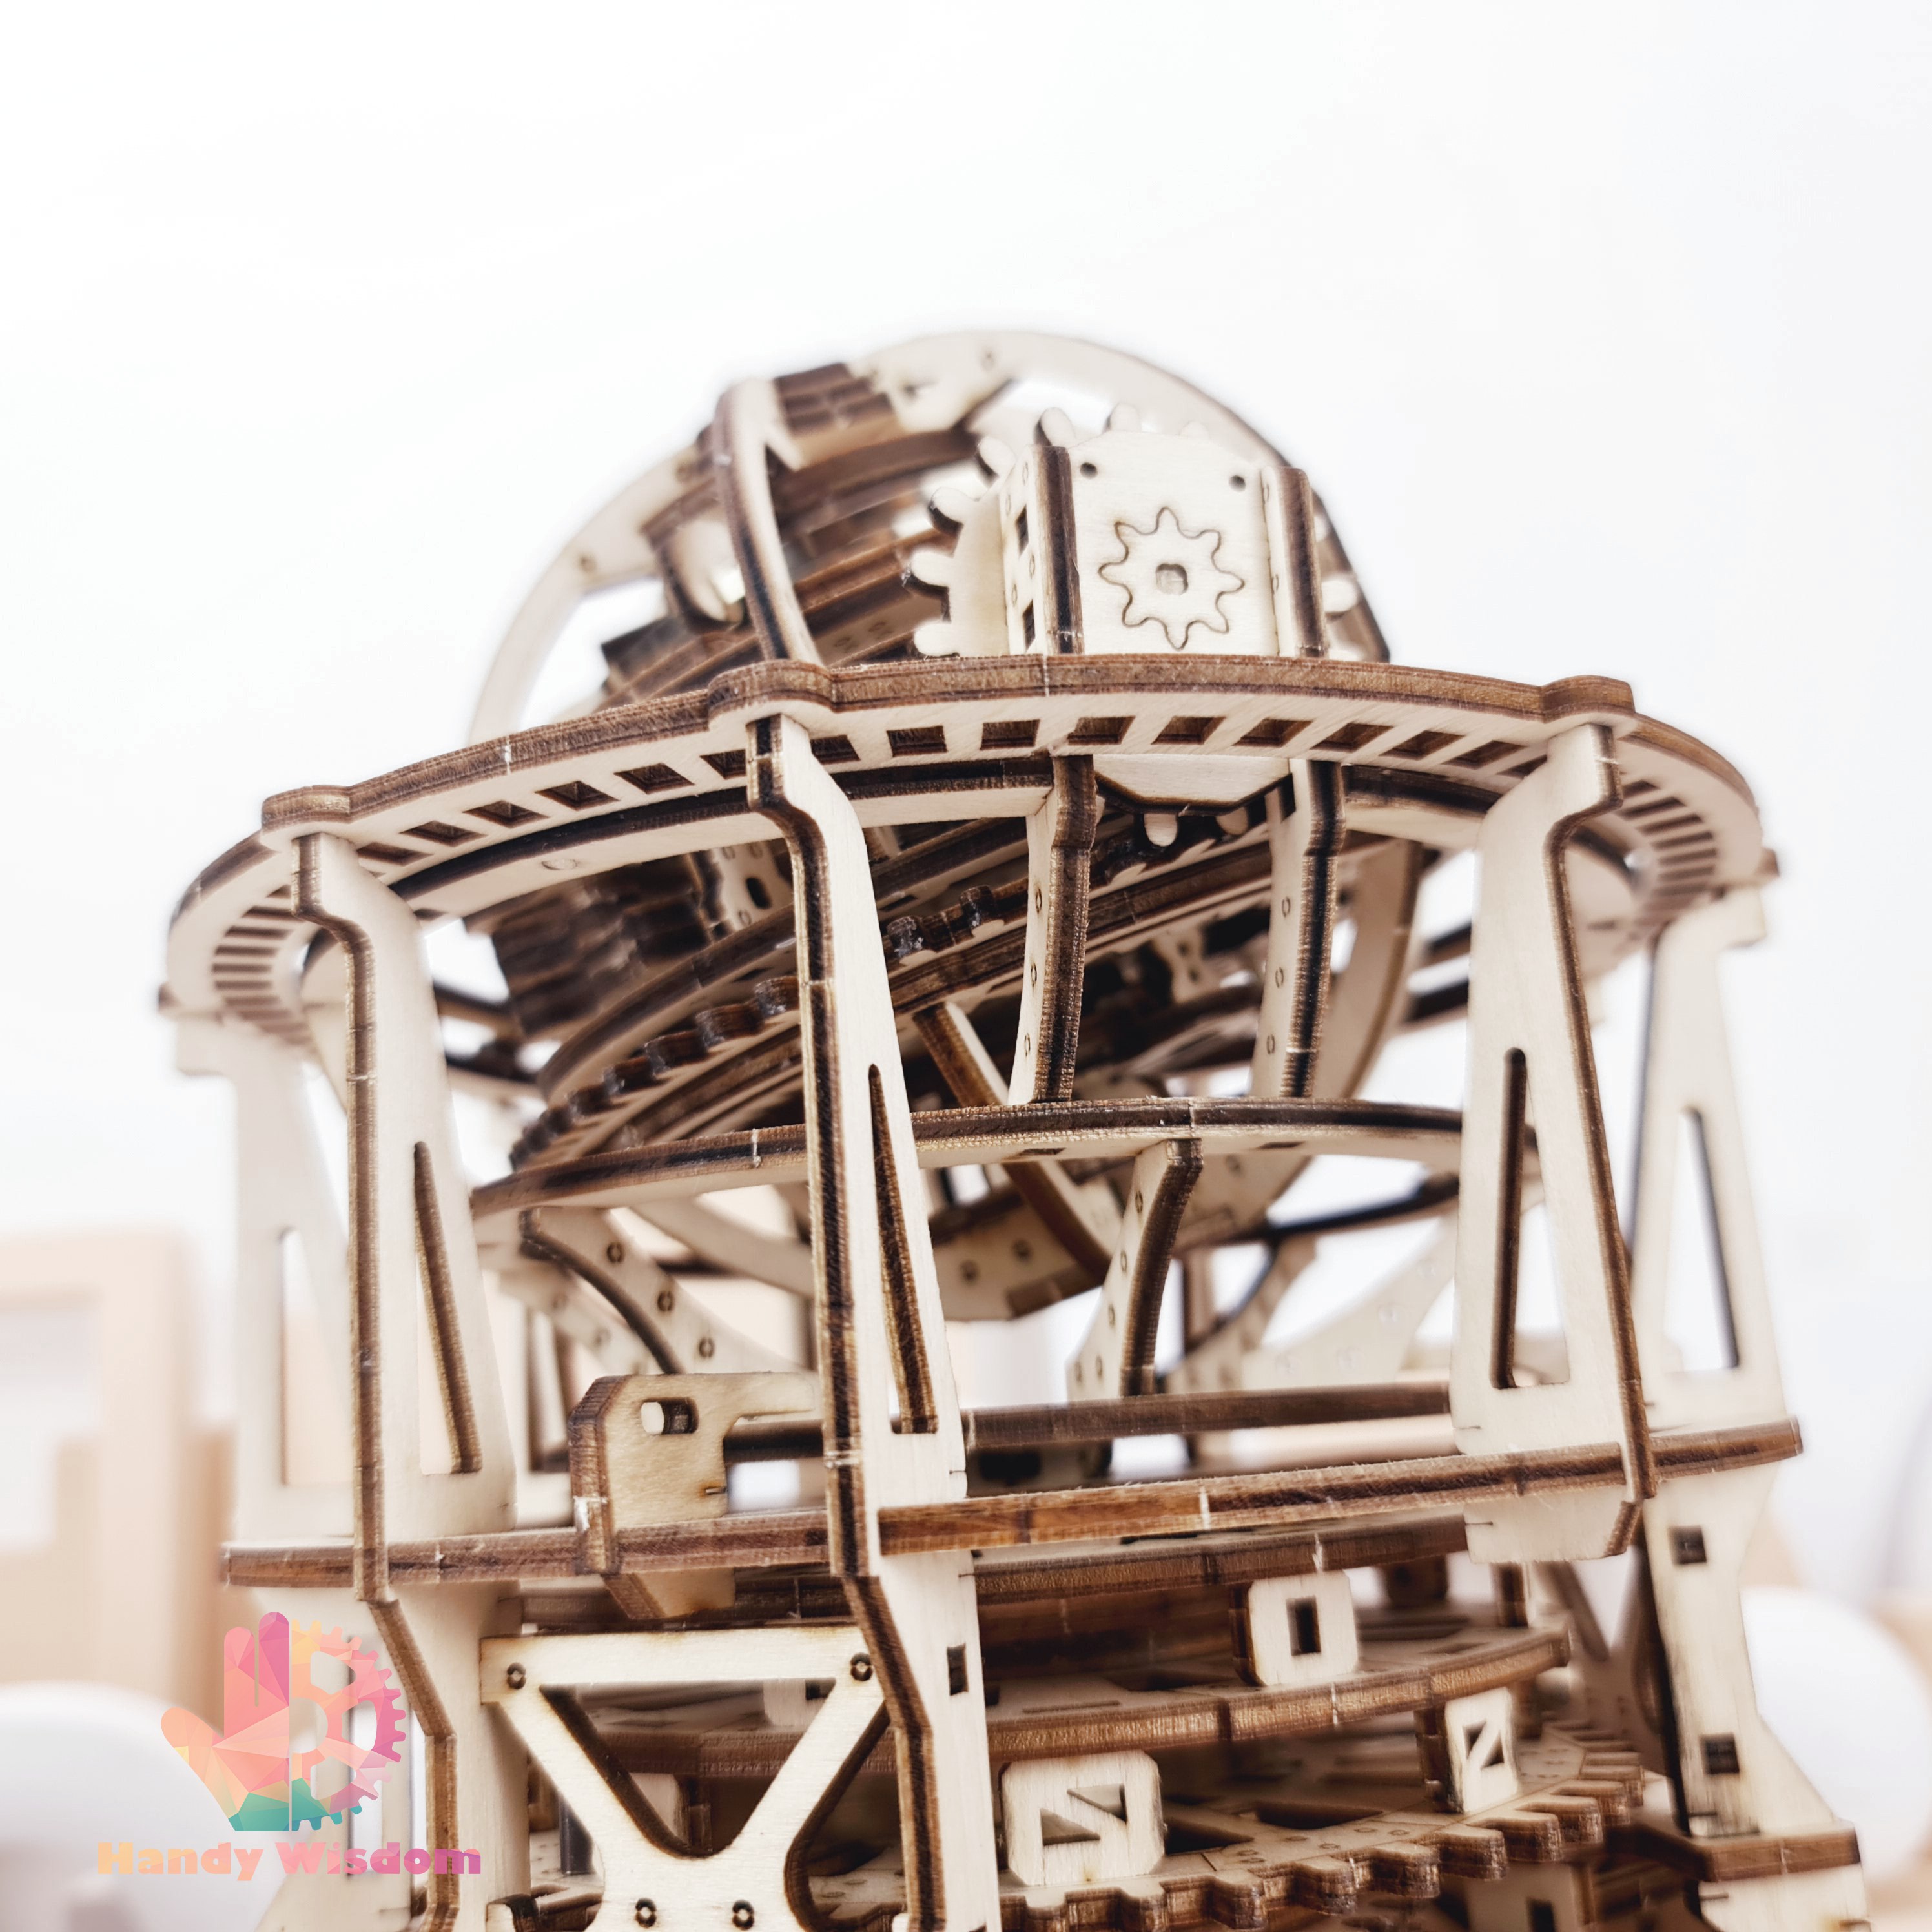 Mô hình gỗ chuyển động - Dream Tourbillon - Đồng hồ thiên văn